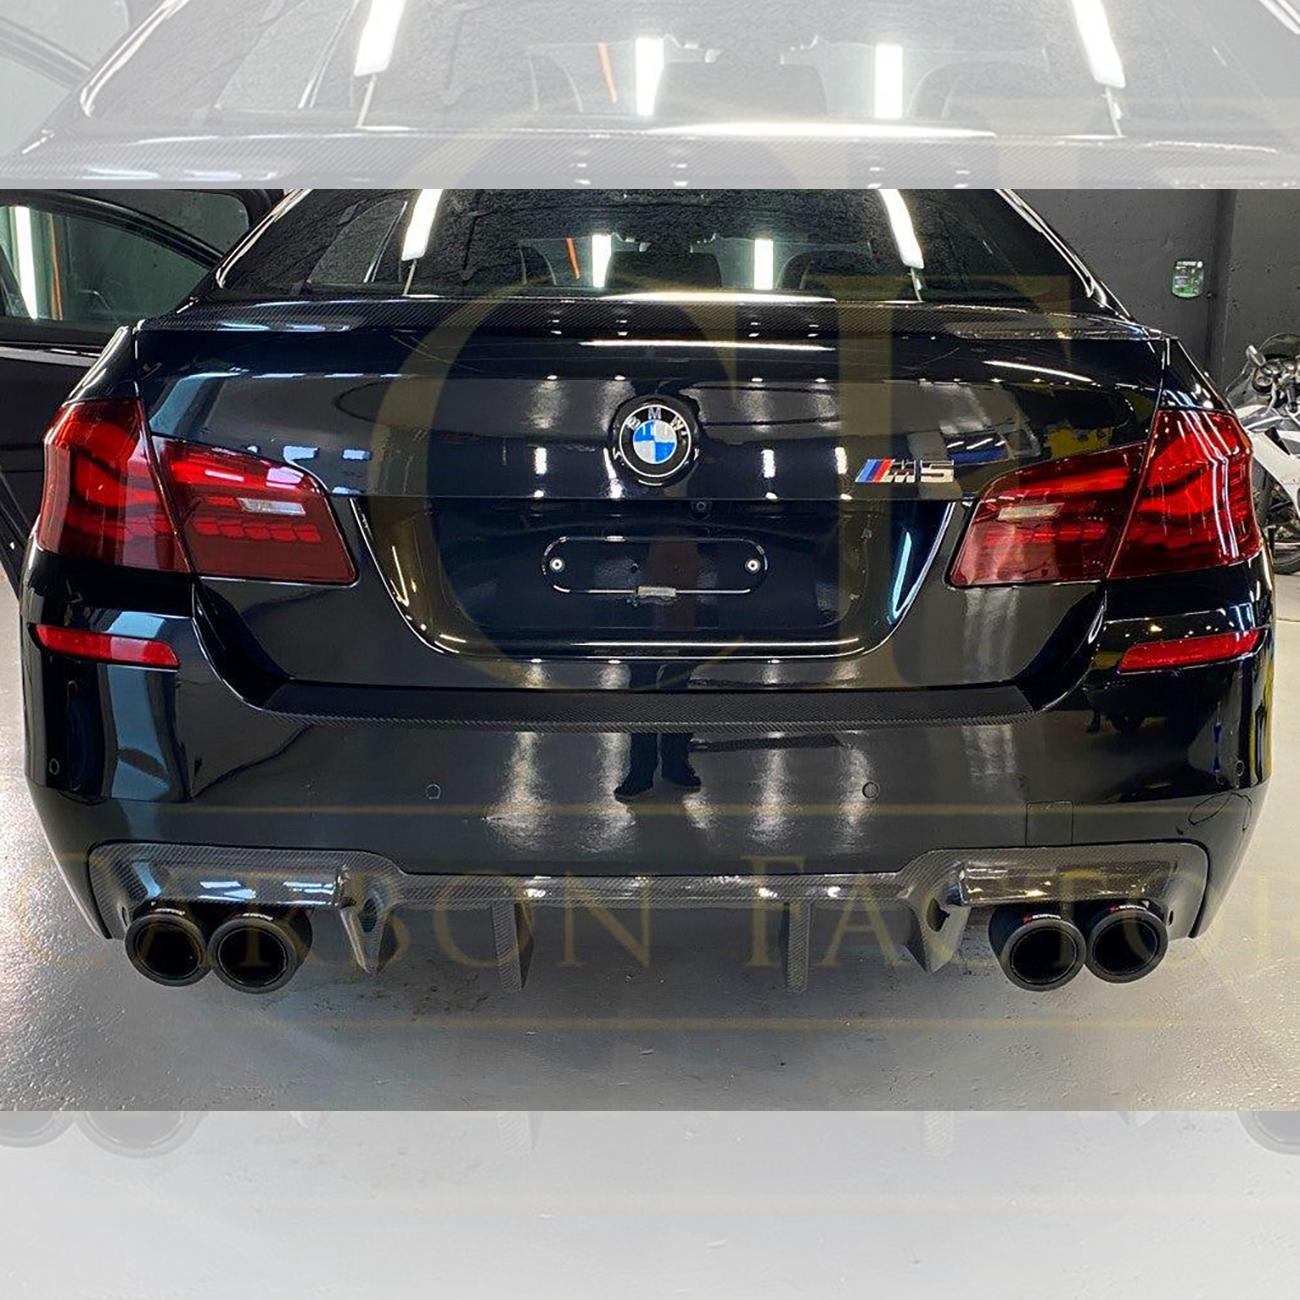 BMW F10 M5 DTM Style Carbon Fibre Rear Diffuser 10-17-Carbon Factory